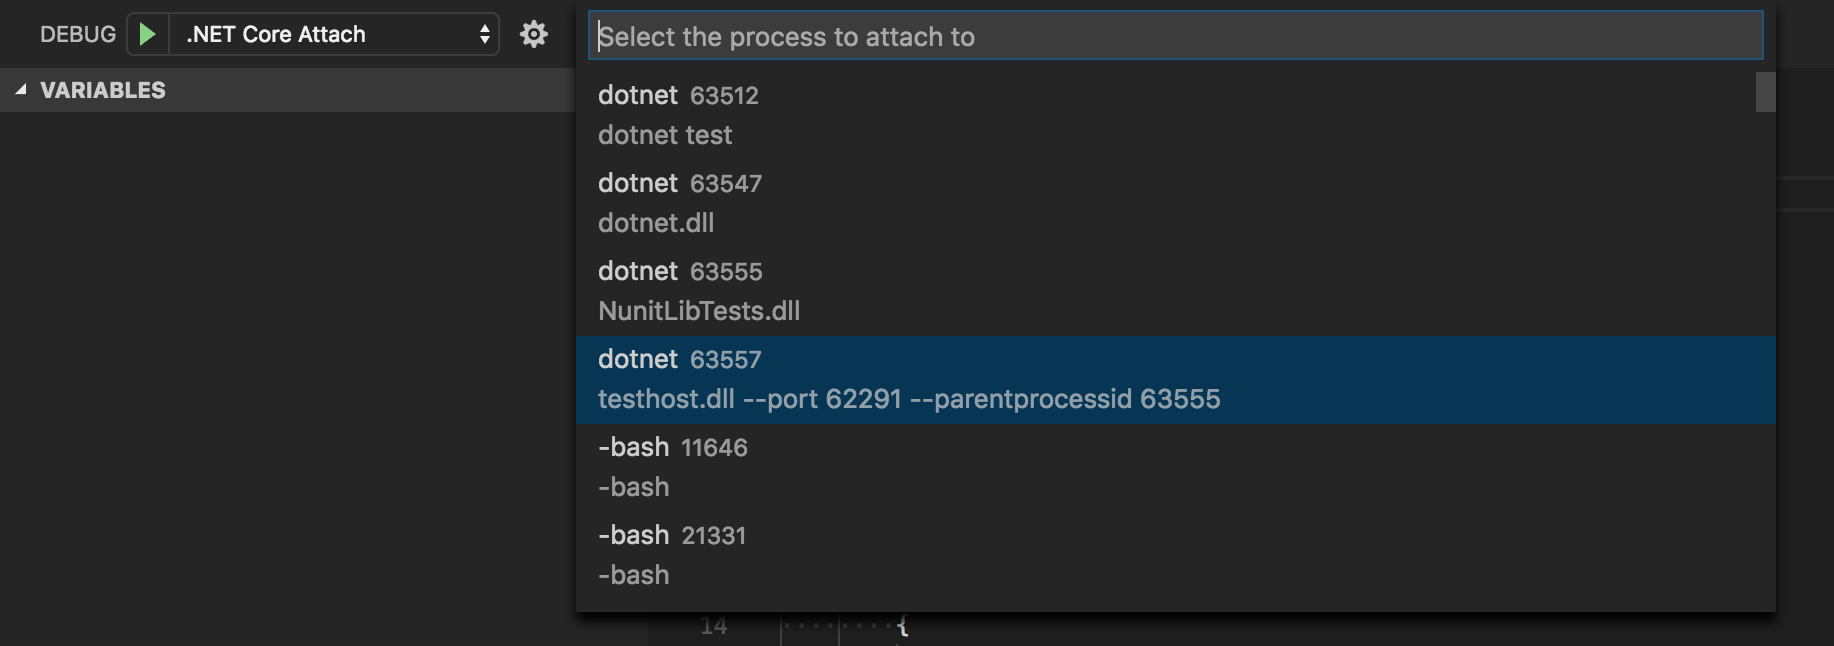 Debug .NET Core Attach